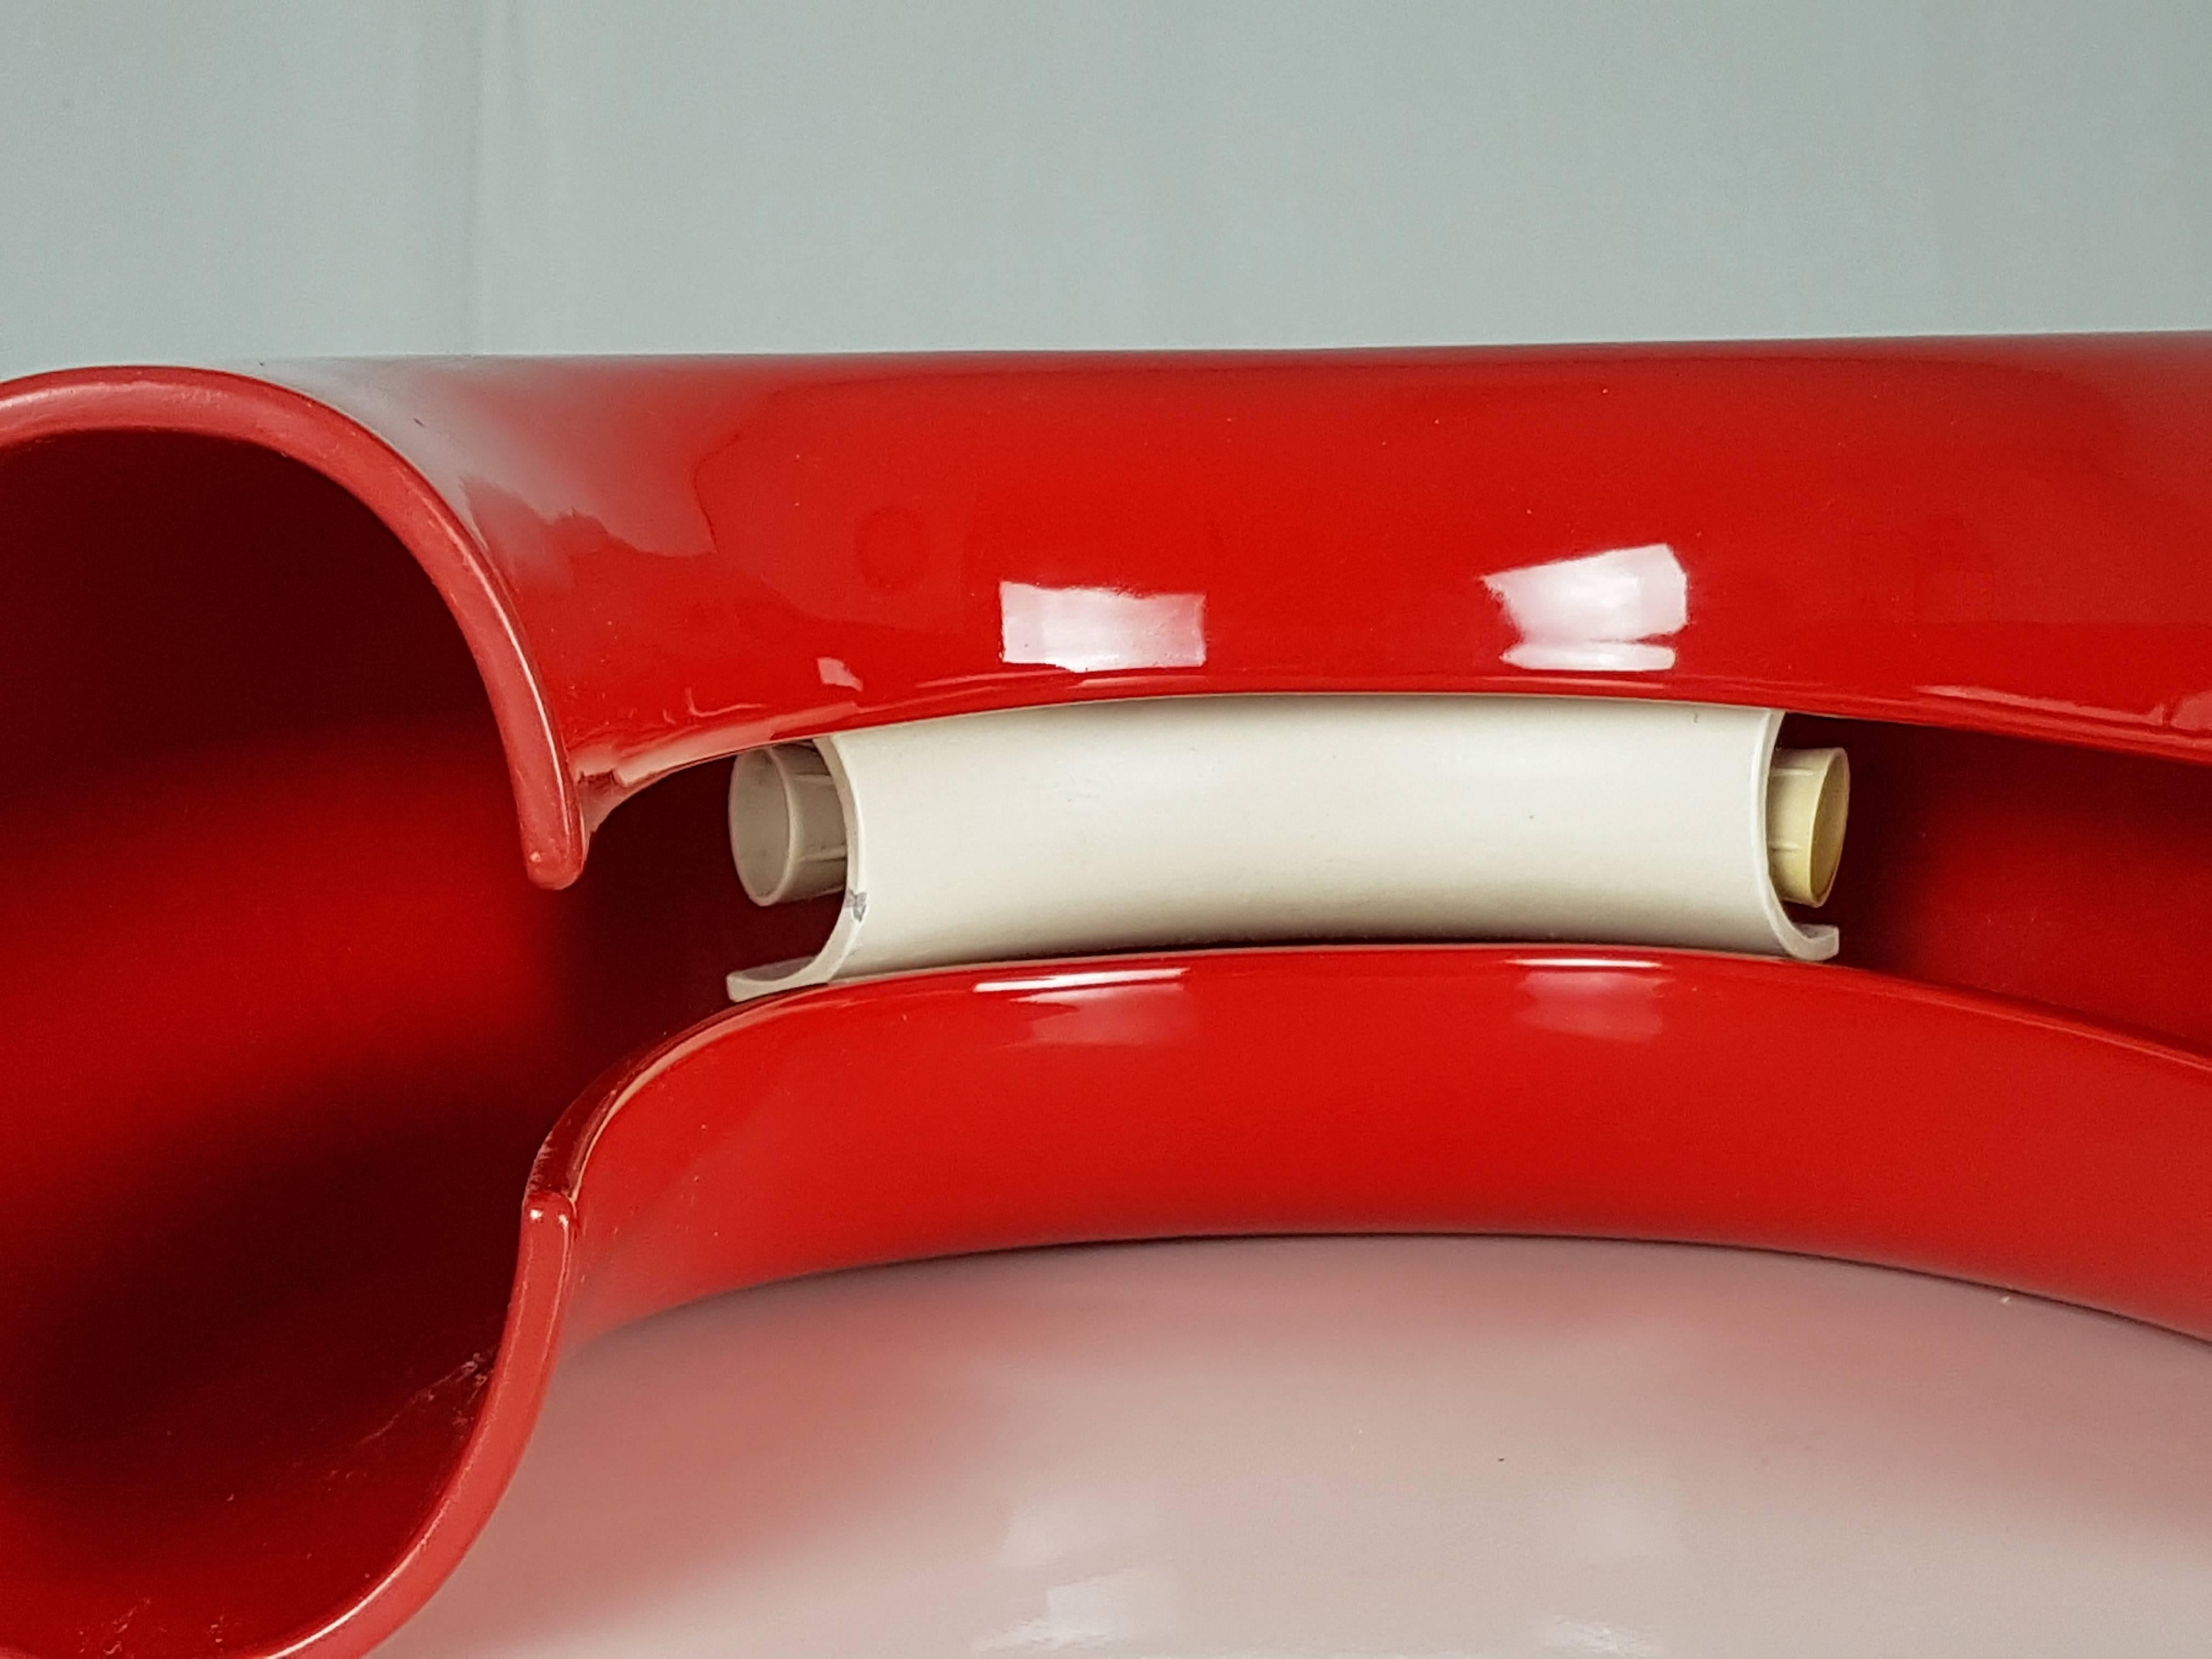 Glazed Red Tubo Table Lamp by Tomoko Tsuboi Ponzio for Ceramica Franco Pozzi, 1968 For Sale